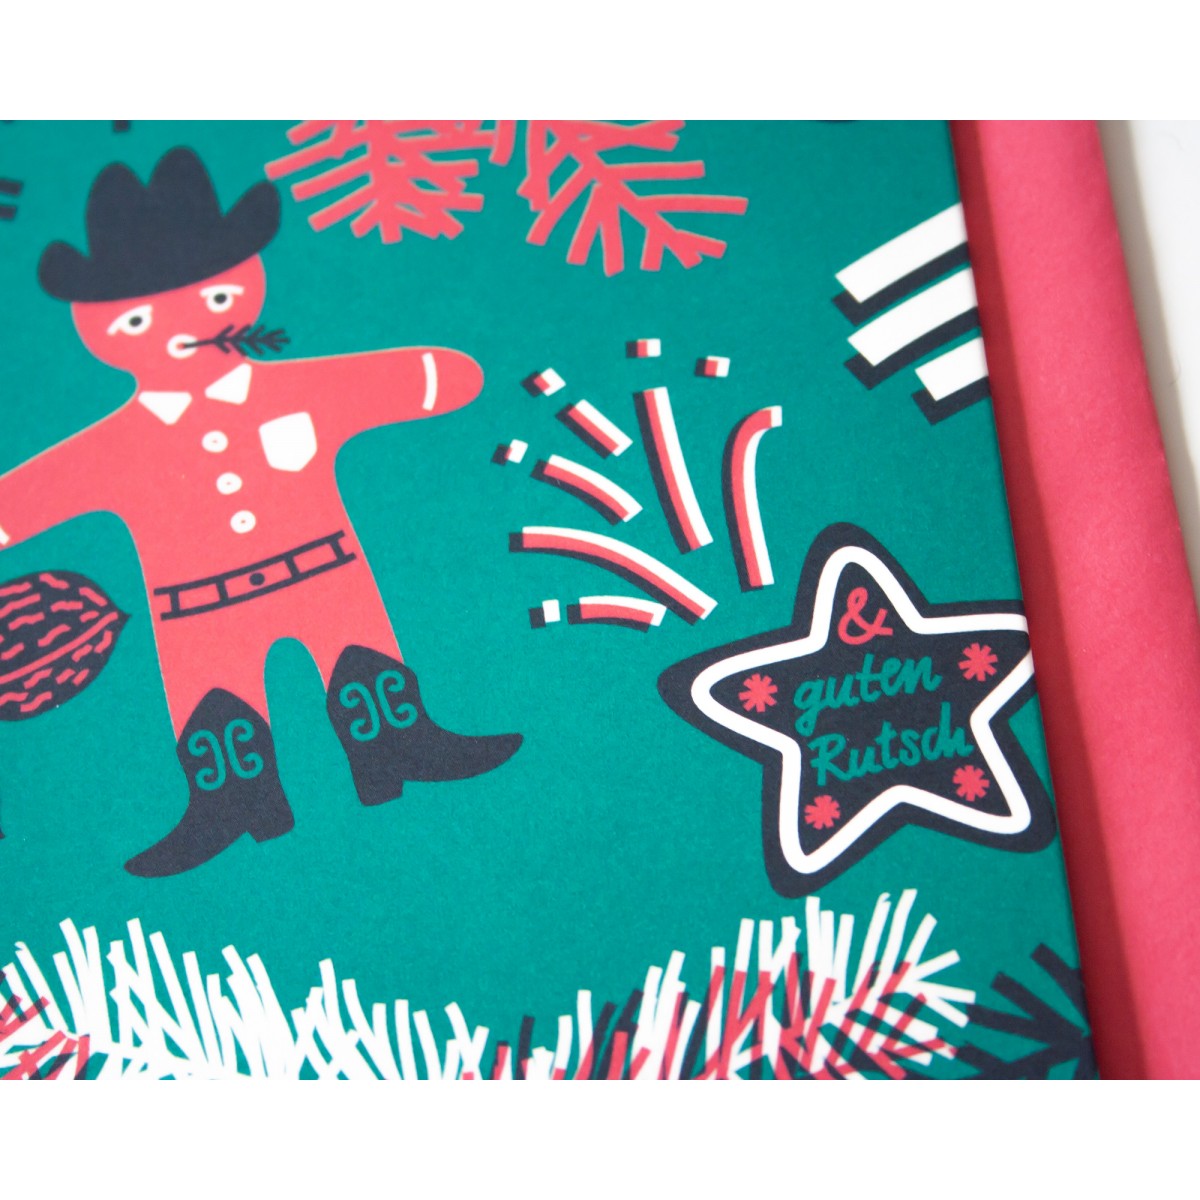 3er Set Weihnachtskarten »Frohes Fest« // Papaya paper products